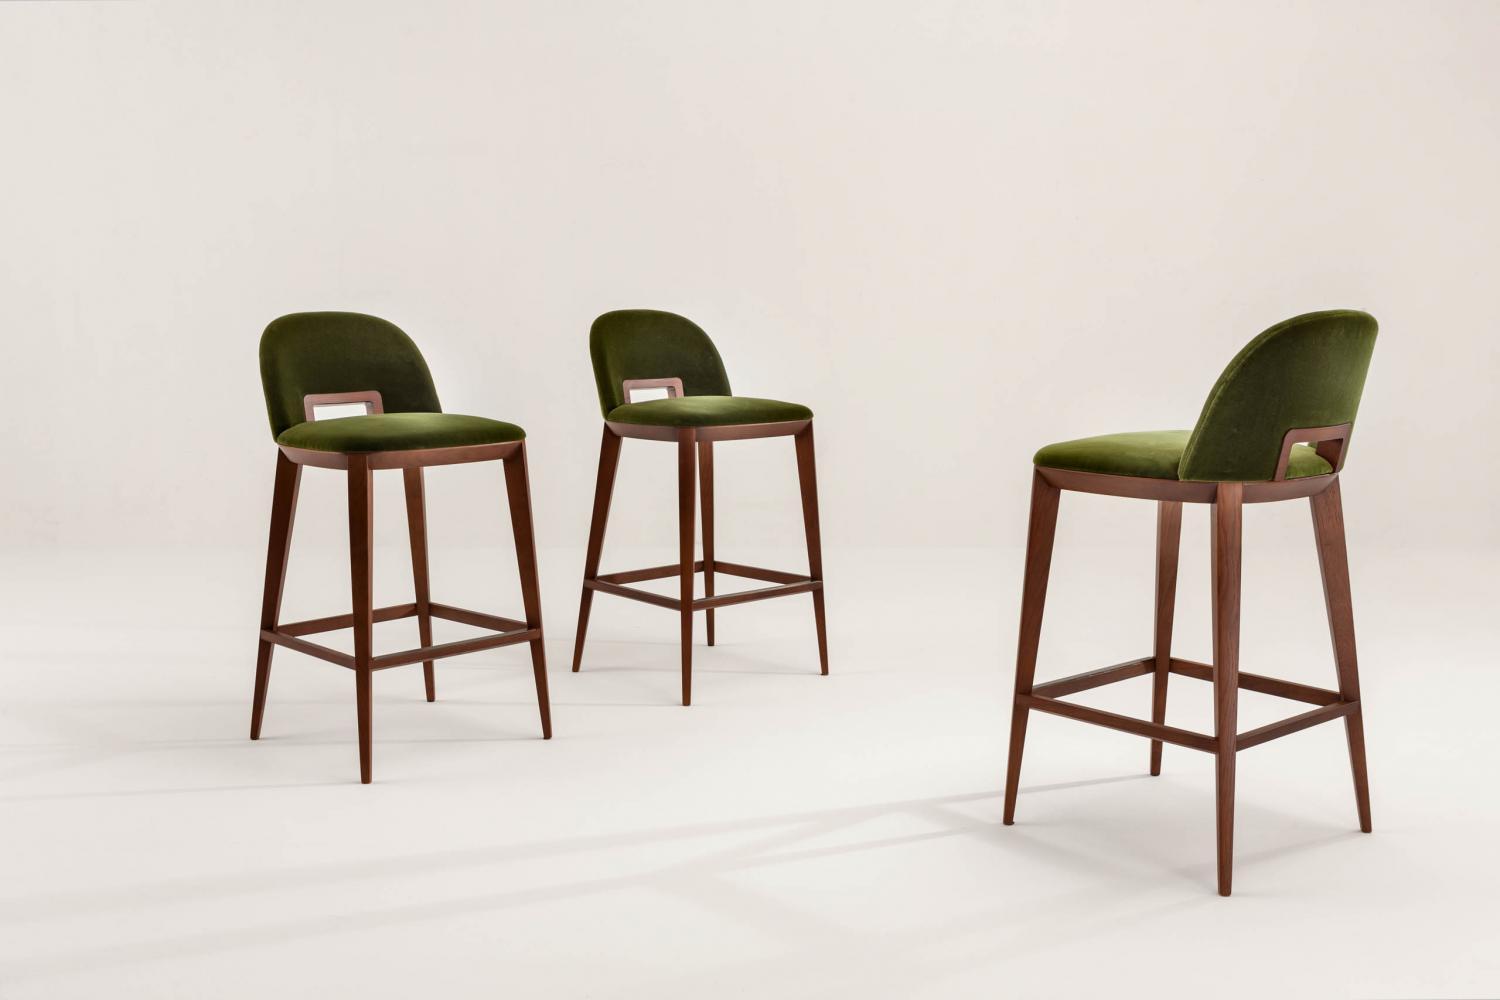 laurameroni margaret padded bar stool in green velvet